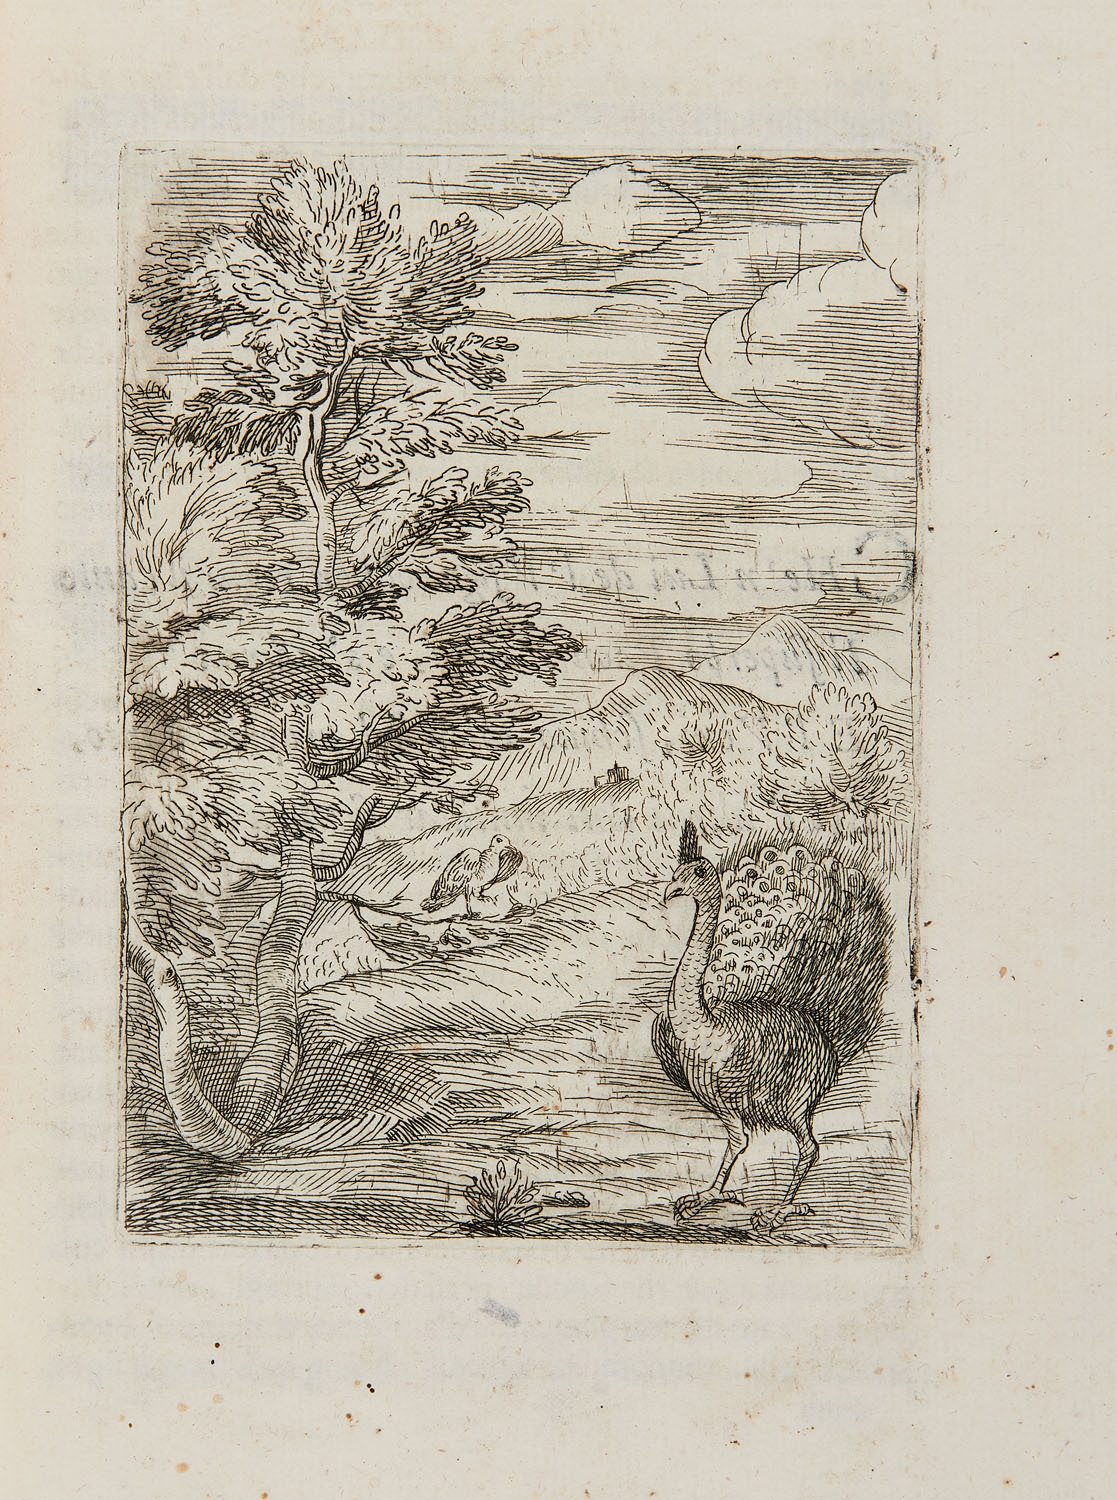 CAPRARA, Alberto (1627-1691) - Insegnamenti del vivere. Bologna: l'erede di Domenico Barbieri ad